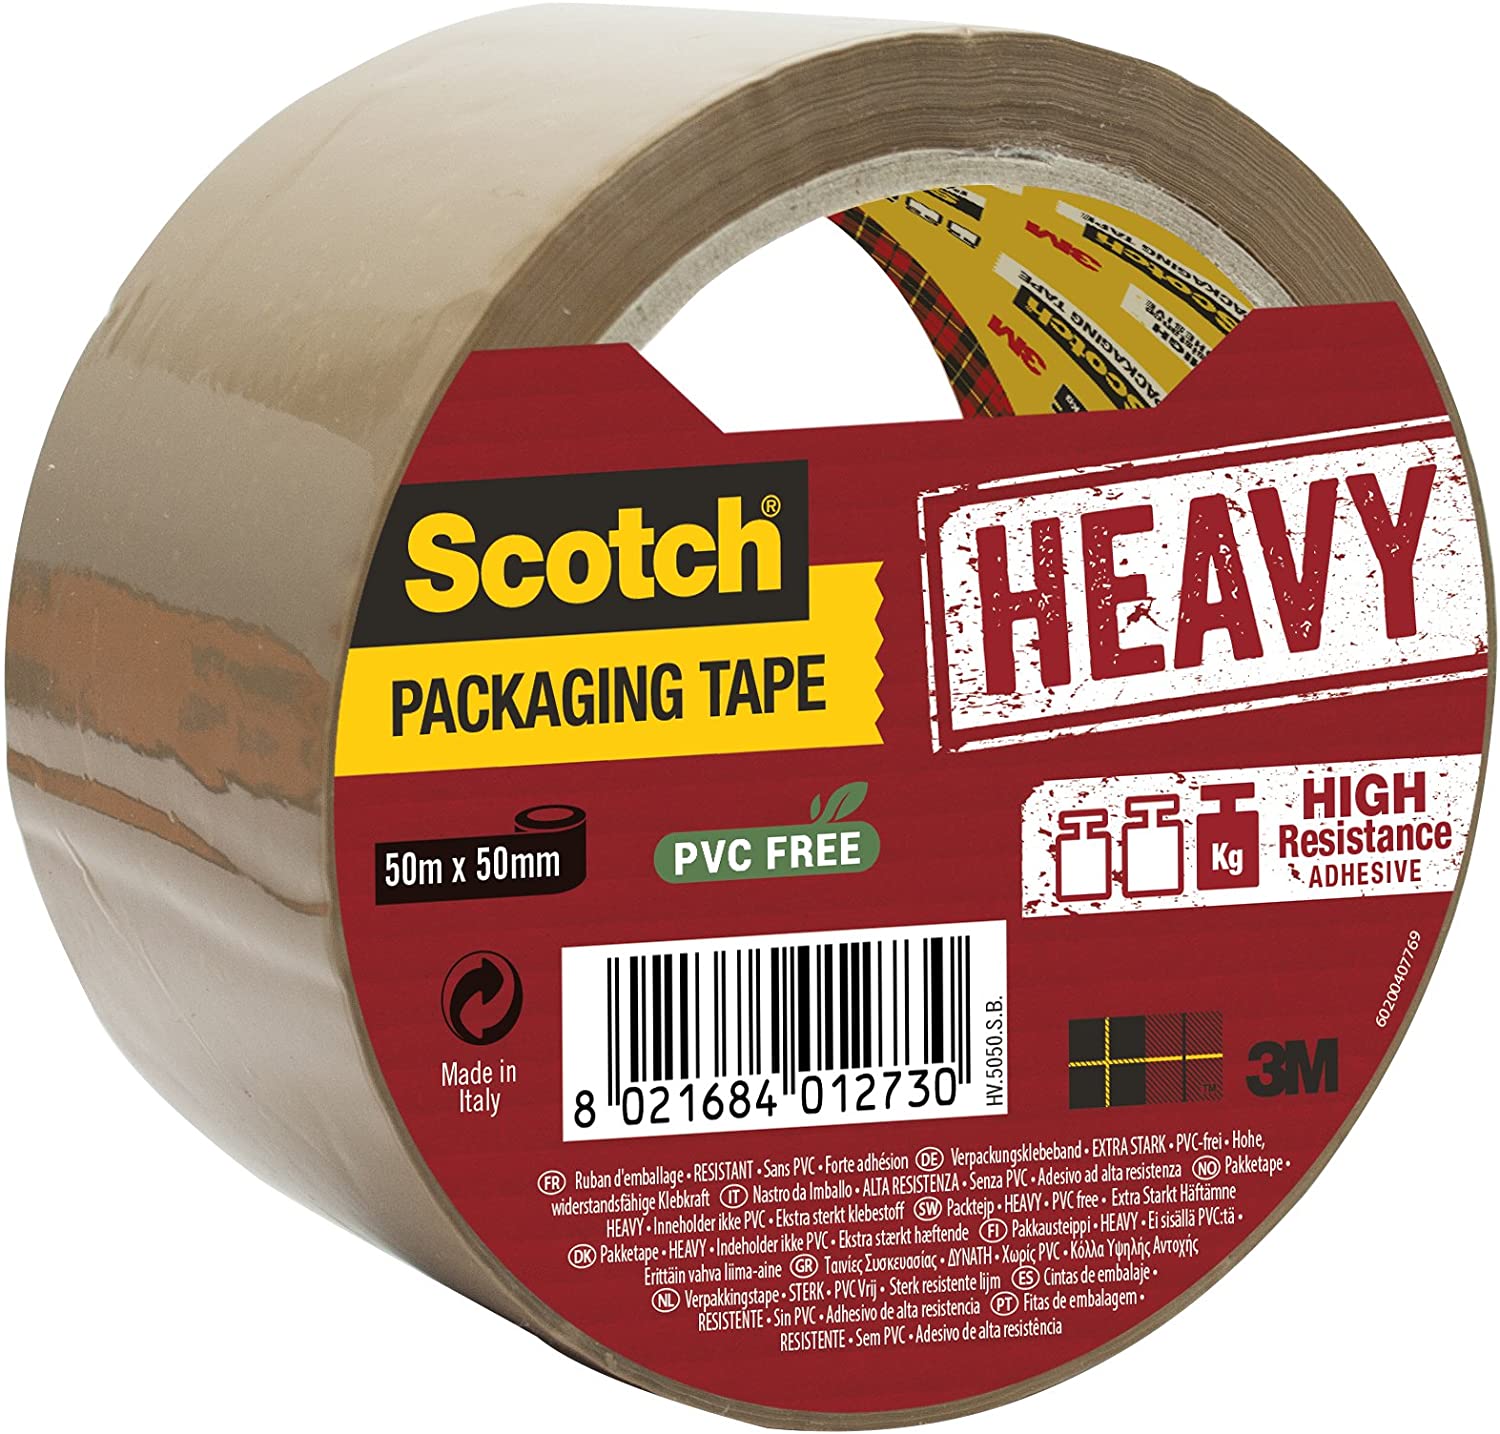 Scotch Nastro da Imballo 3M Packaging Tape Heavy/Nastro Adesivo Ultra Resistente, Confezione da 1 Rotolo, Avana, 50mm x 50m